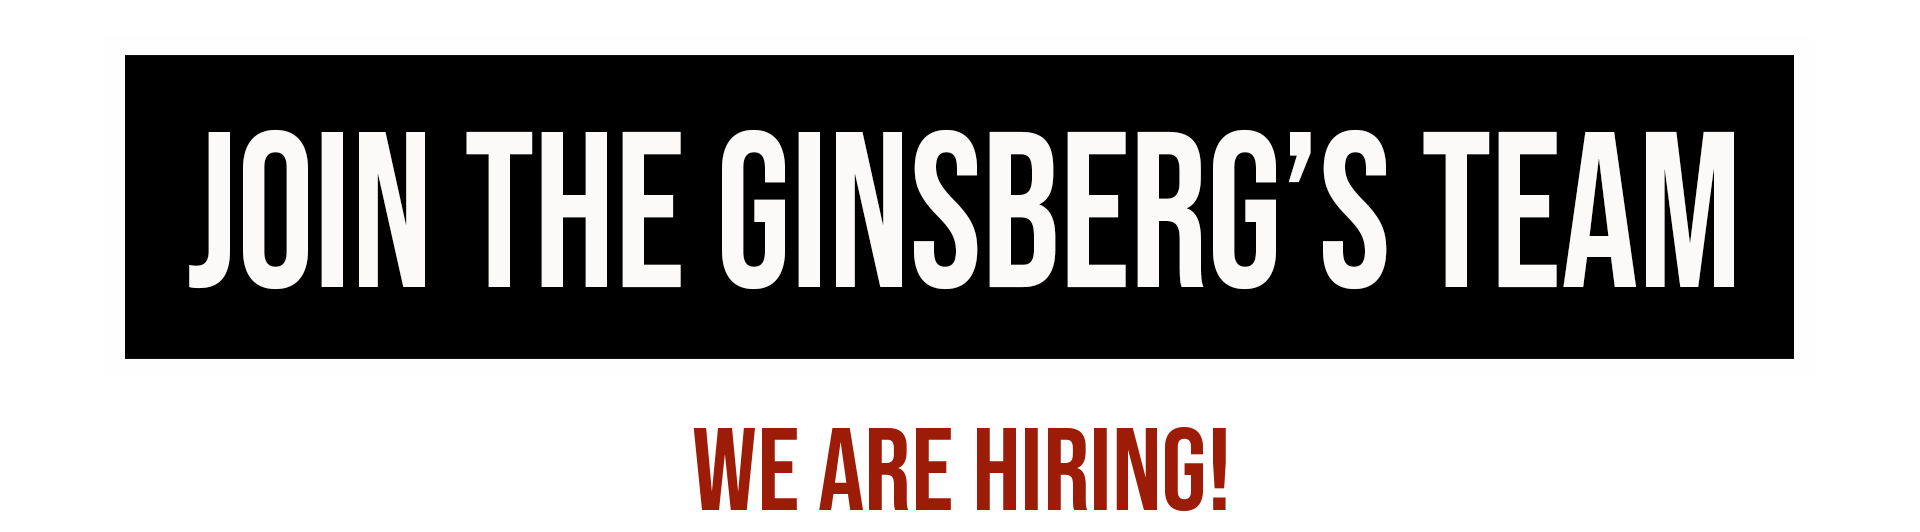 Ginsberg's is Hiring Jobs Careers